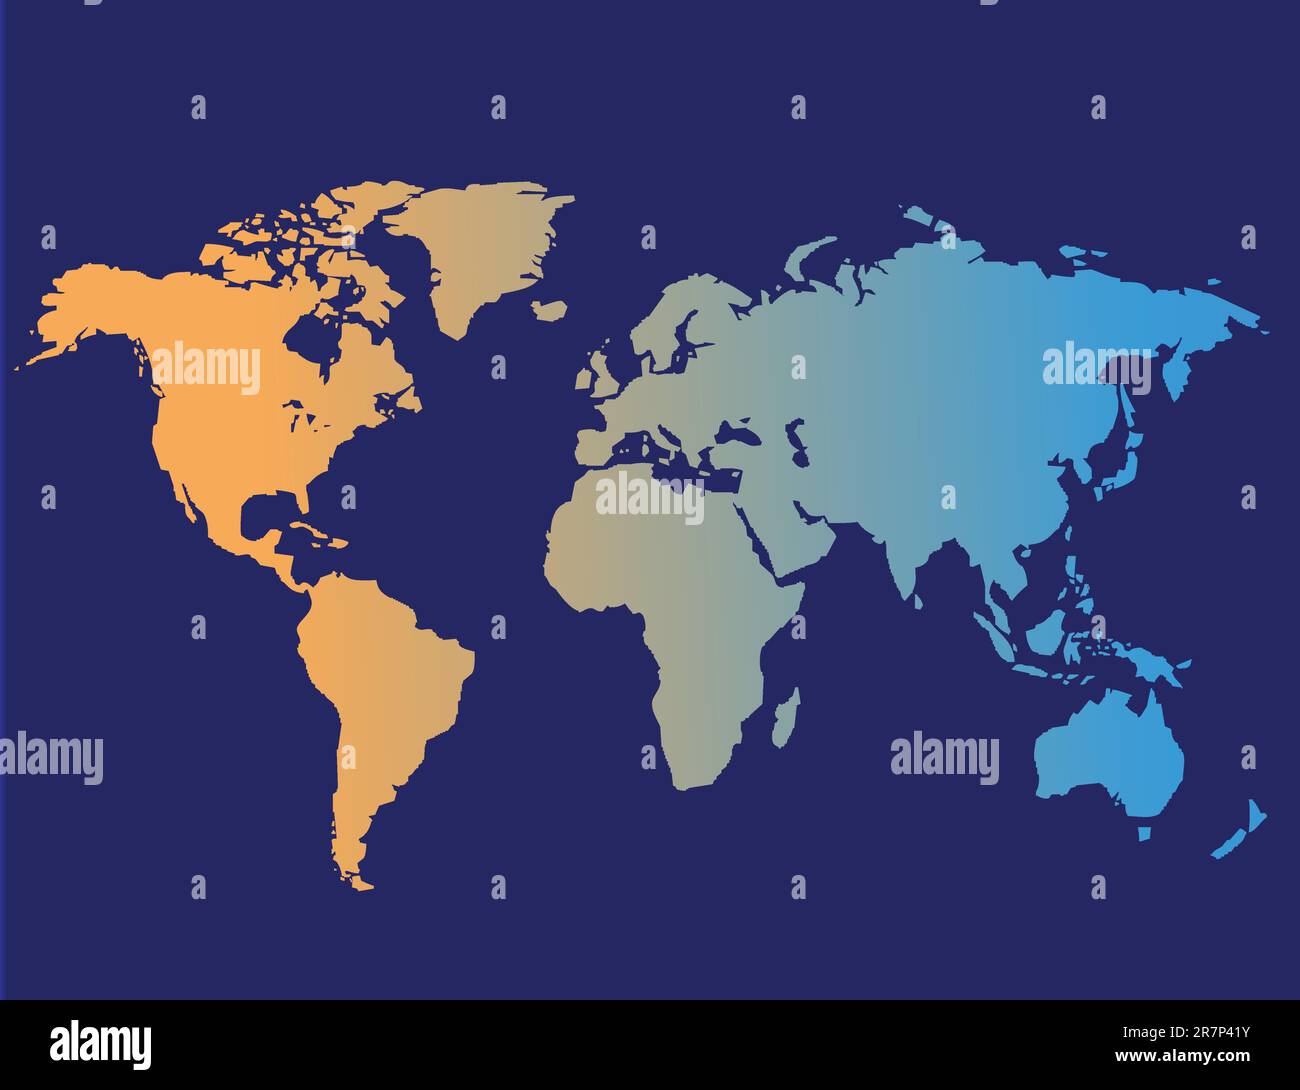 Welt Karte Vektor-illustration Stock Vektor